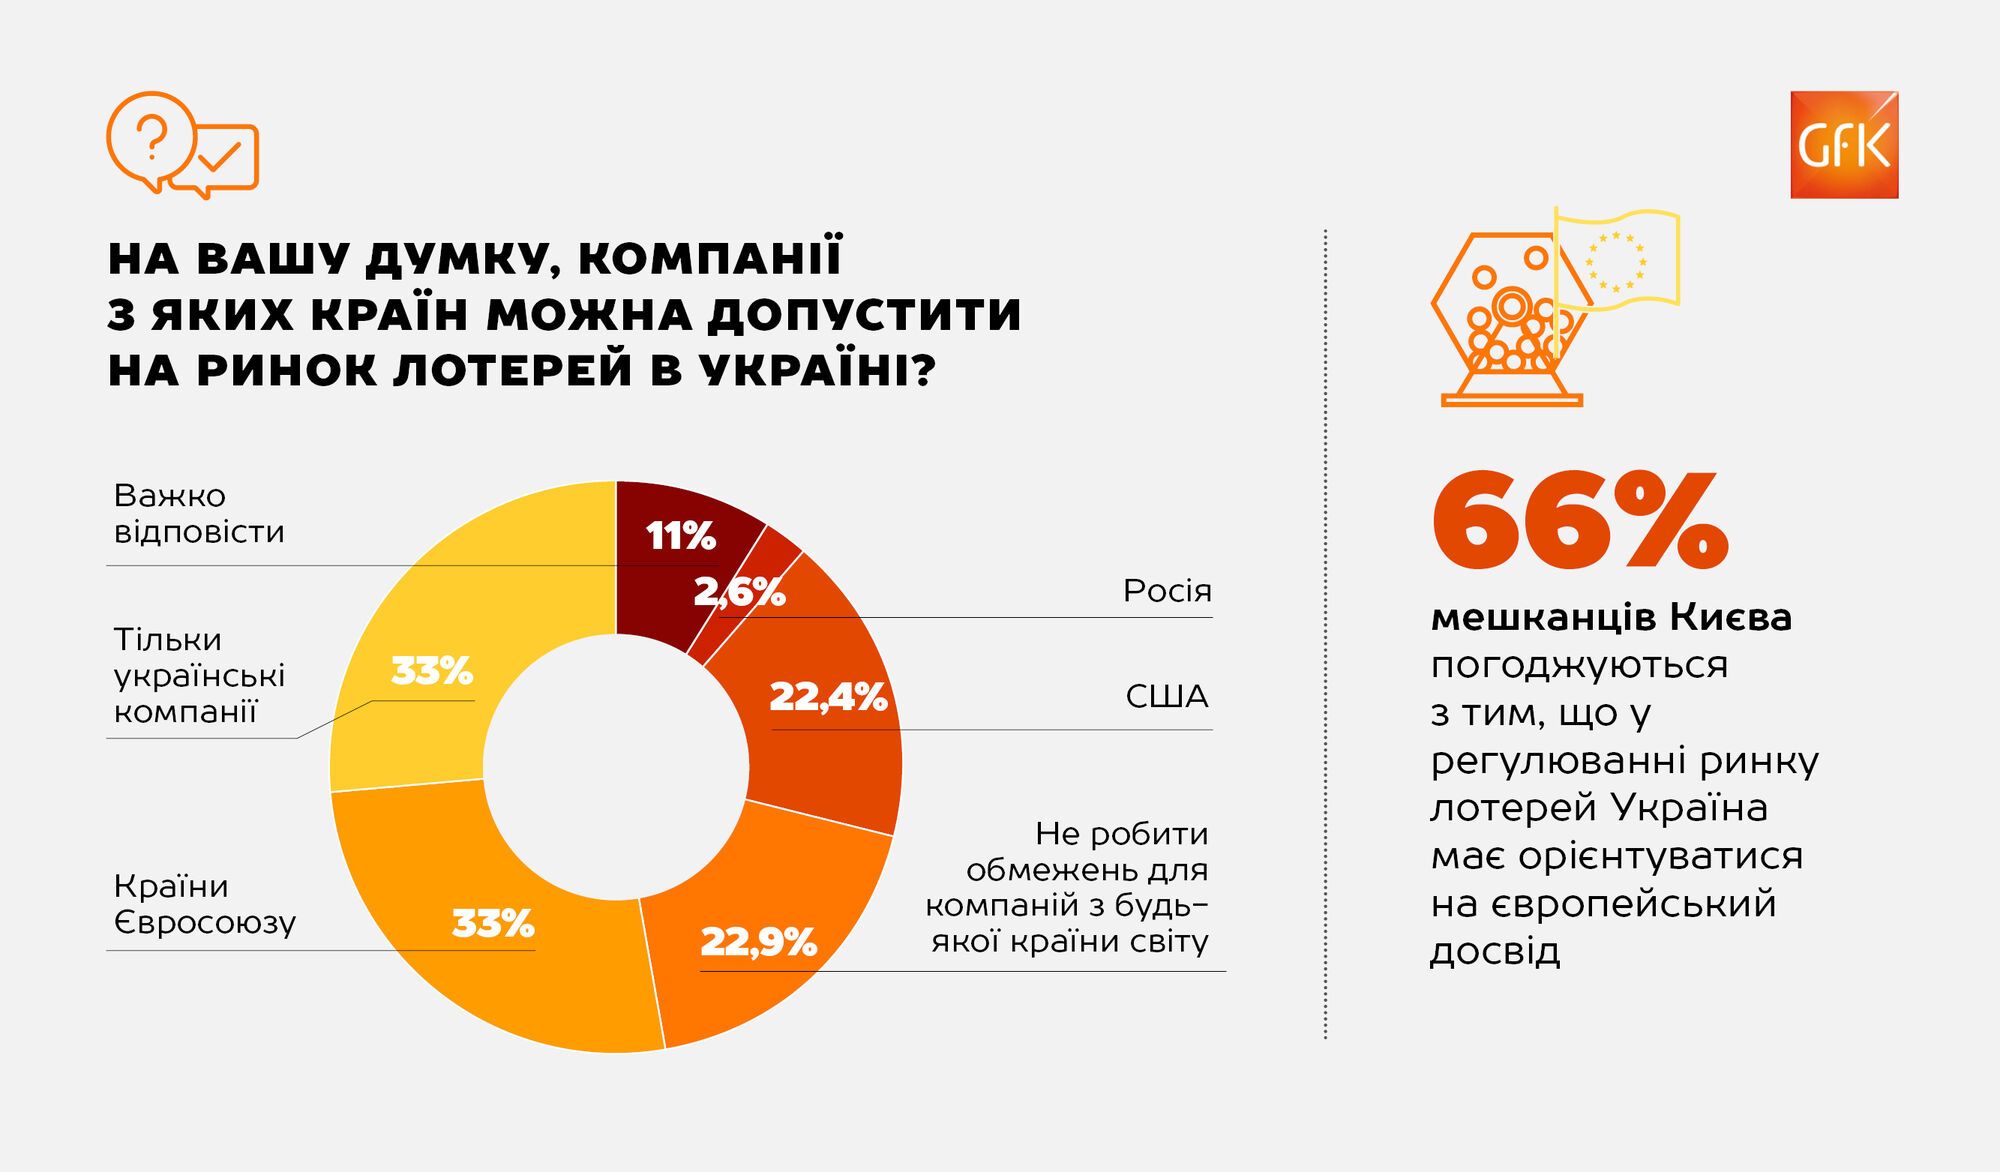 GfK Ukraine: украинцы высказались против России на рынке лотерей